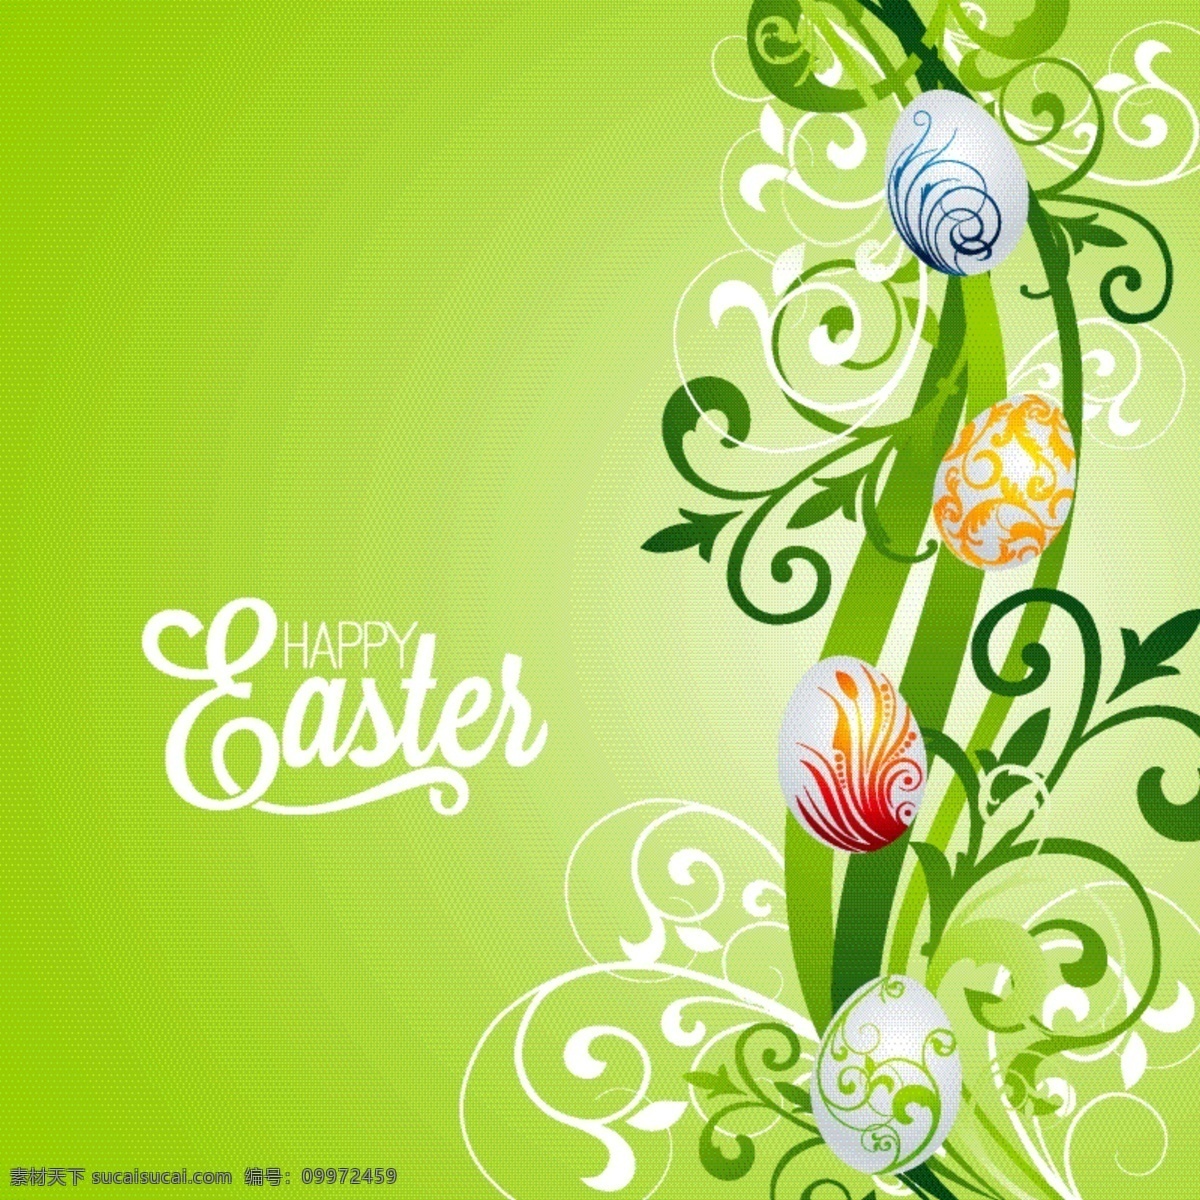 复活节 背景 绿色 壁纸 春天 庆祝 快乐 节日 节日快乐 宗教 鸡蛋 兔子 复活节快乐 蛋 复活节彩蛋 传统 四月